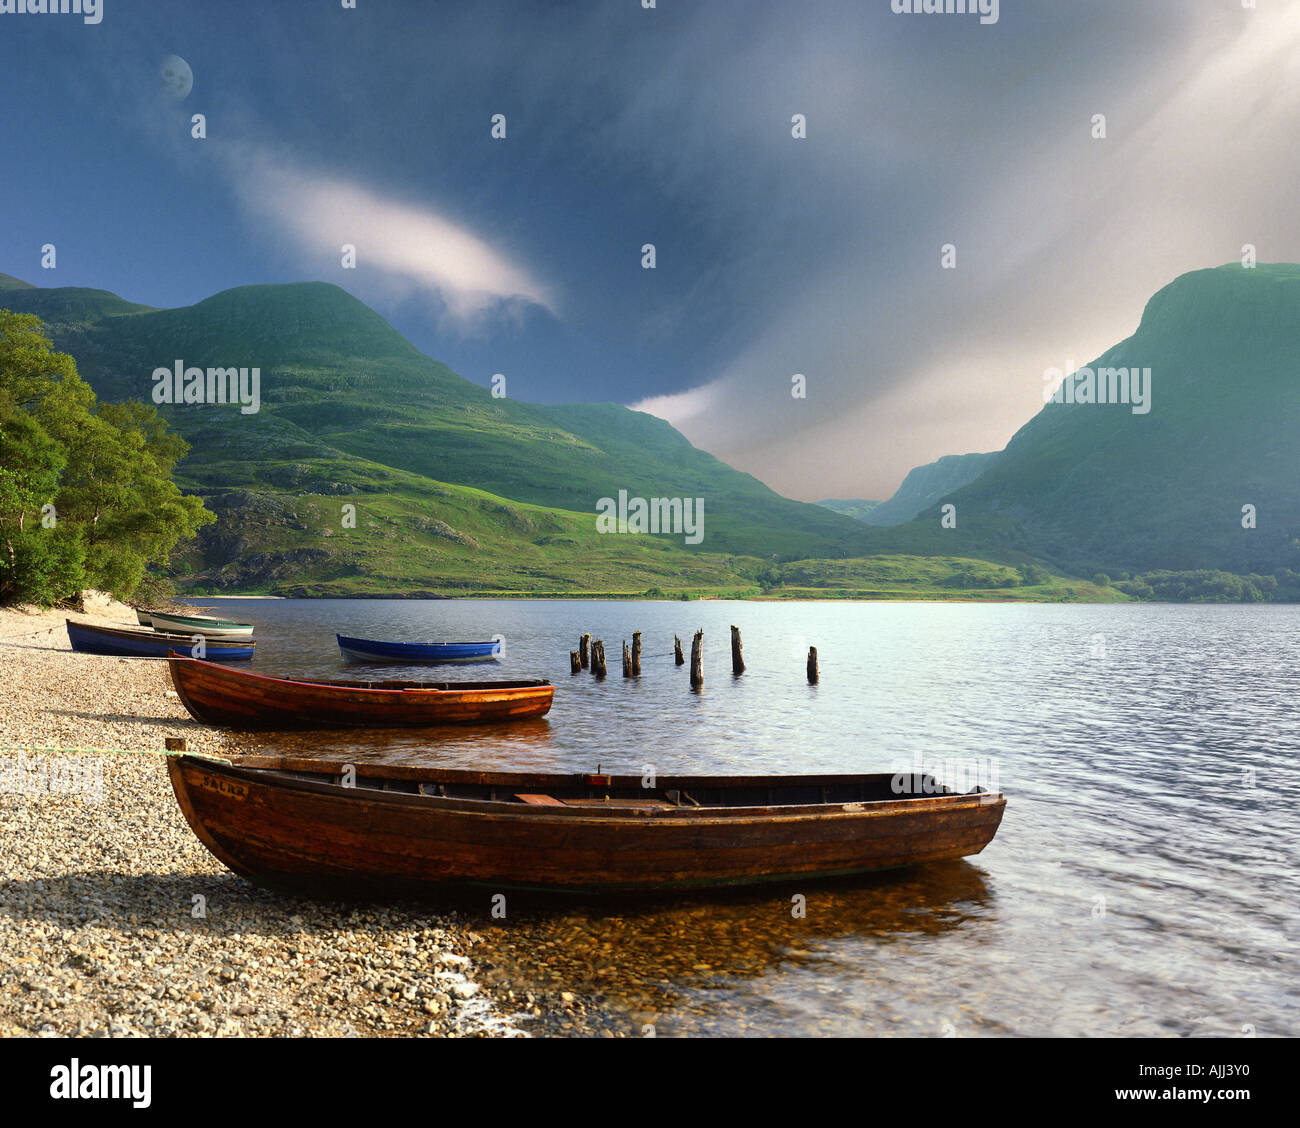 GB - Scozia: Loch Maree nelle Highlands Foto Stock